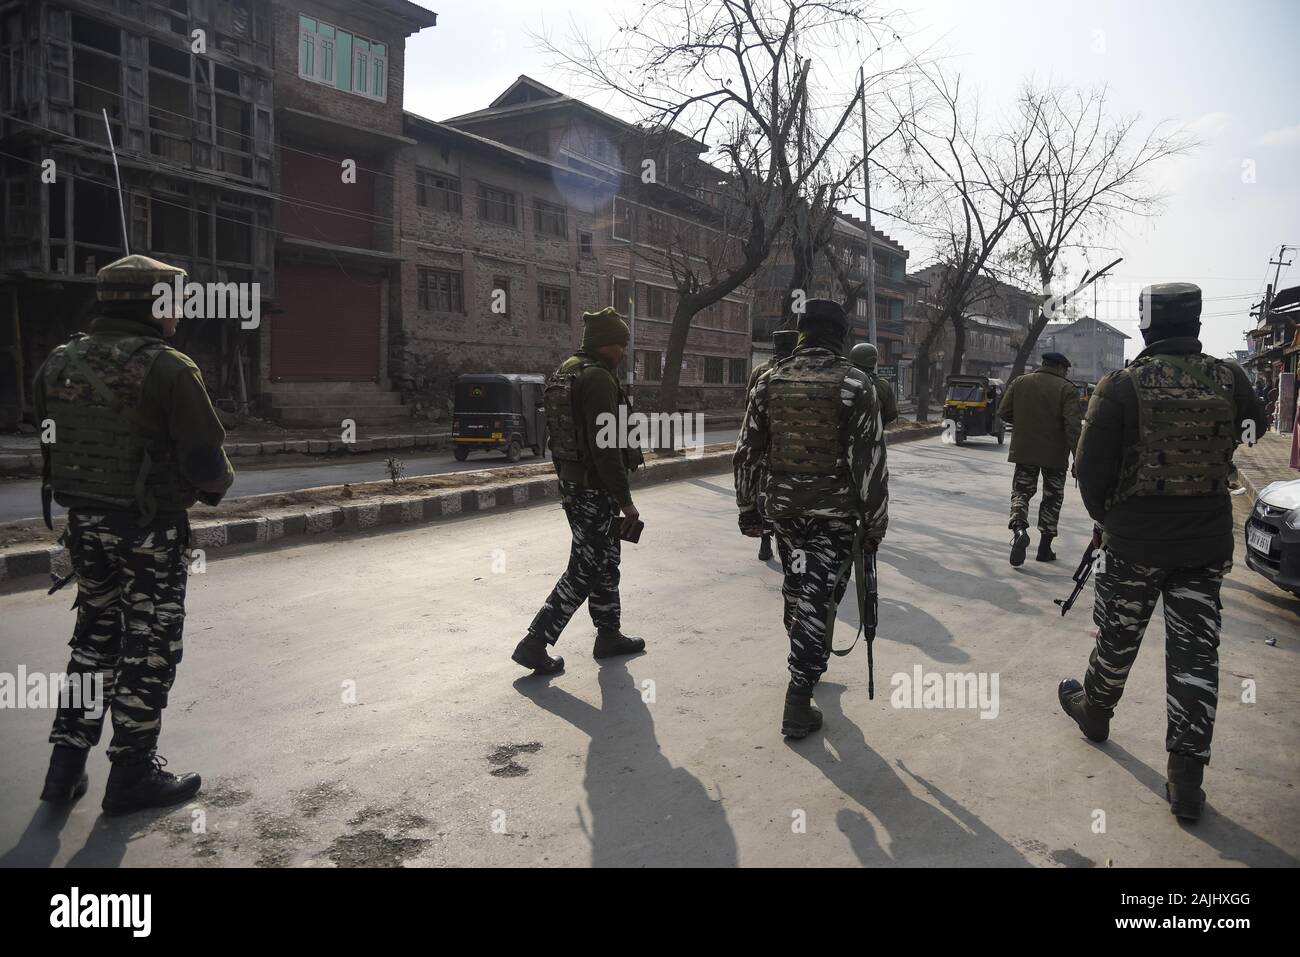 Les forces paramilitaires indiennes patrouille près de la place d'explosion à Srinagar.Un garçon de 17 ans a été blessé après l'explosion d'une grenade a eu lieu à Kawdara secteur du centre-ville de Srinagar Cachemire sous administration indienne. Banque D'Images